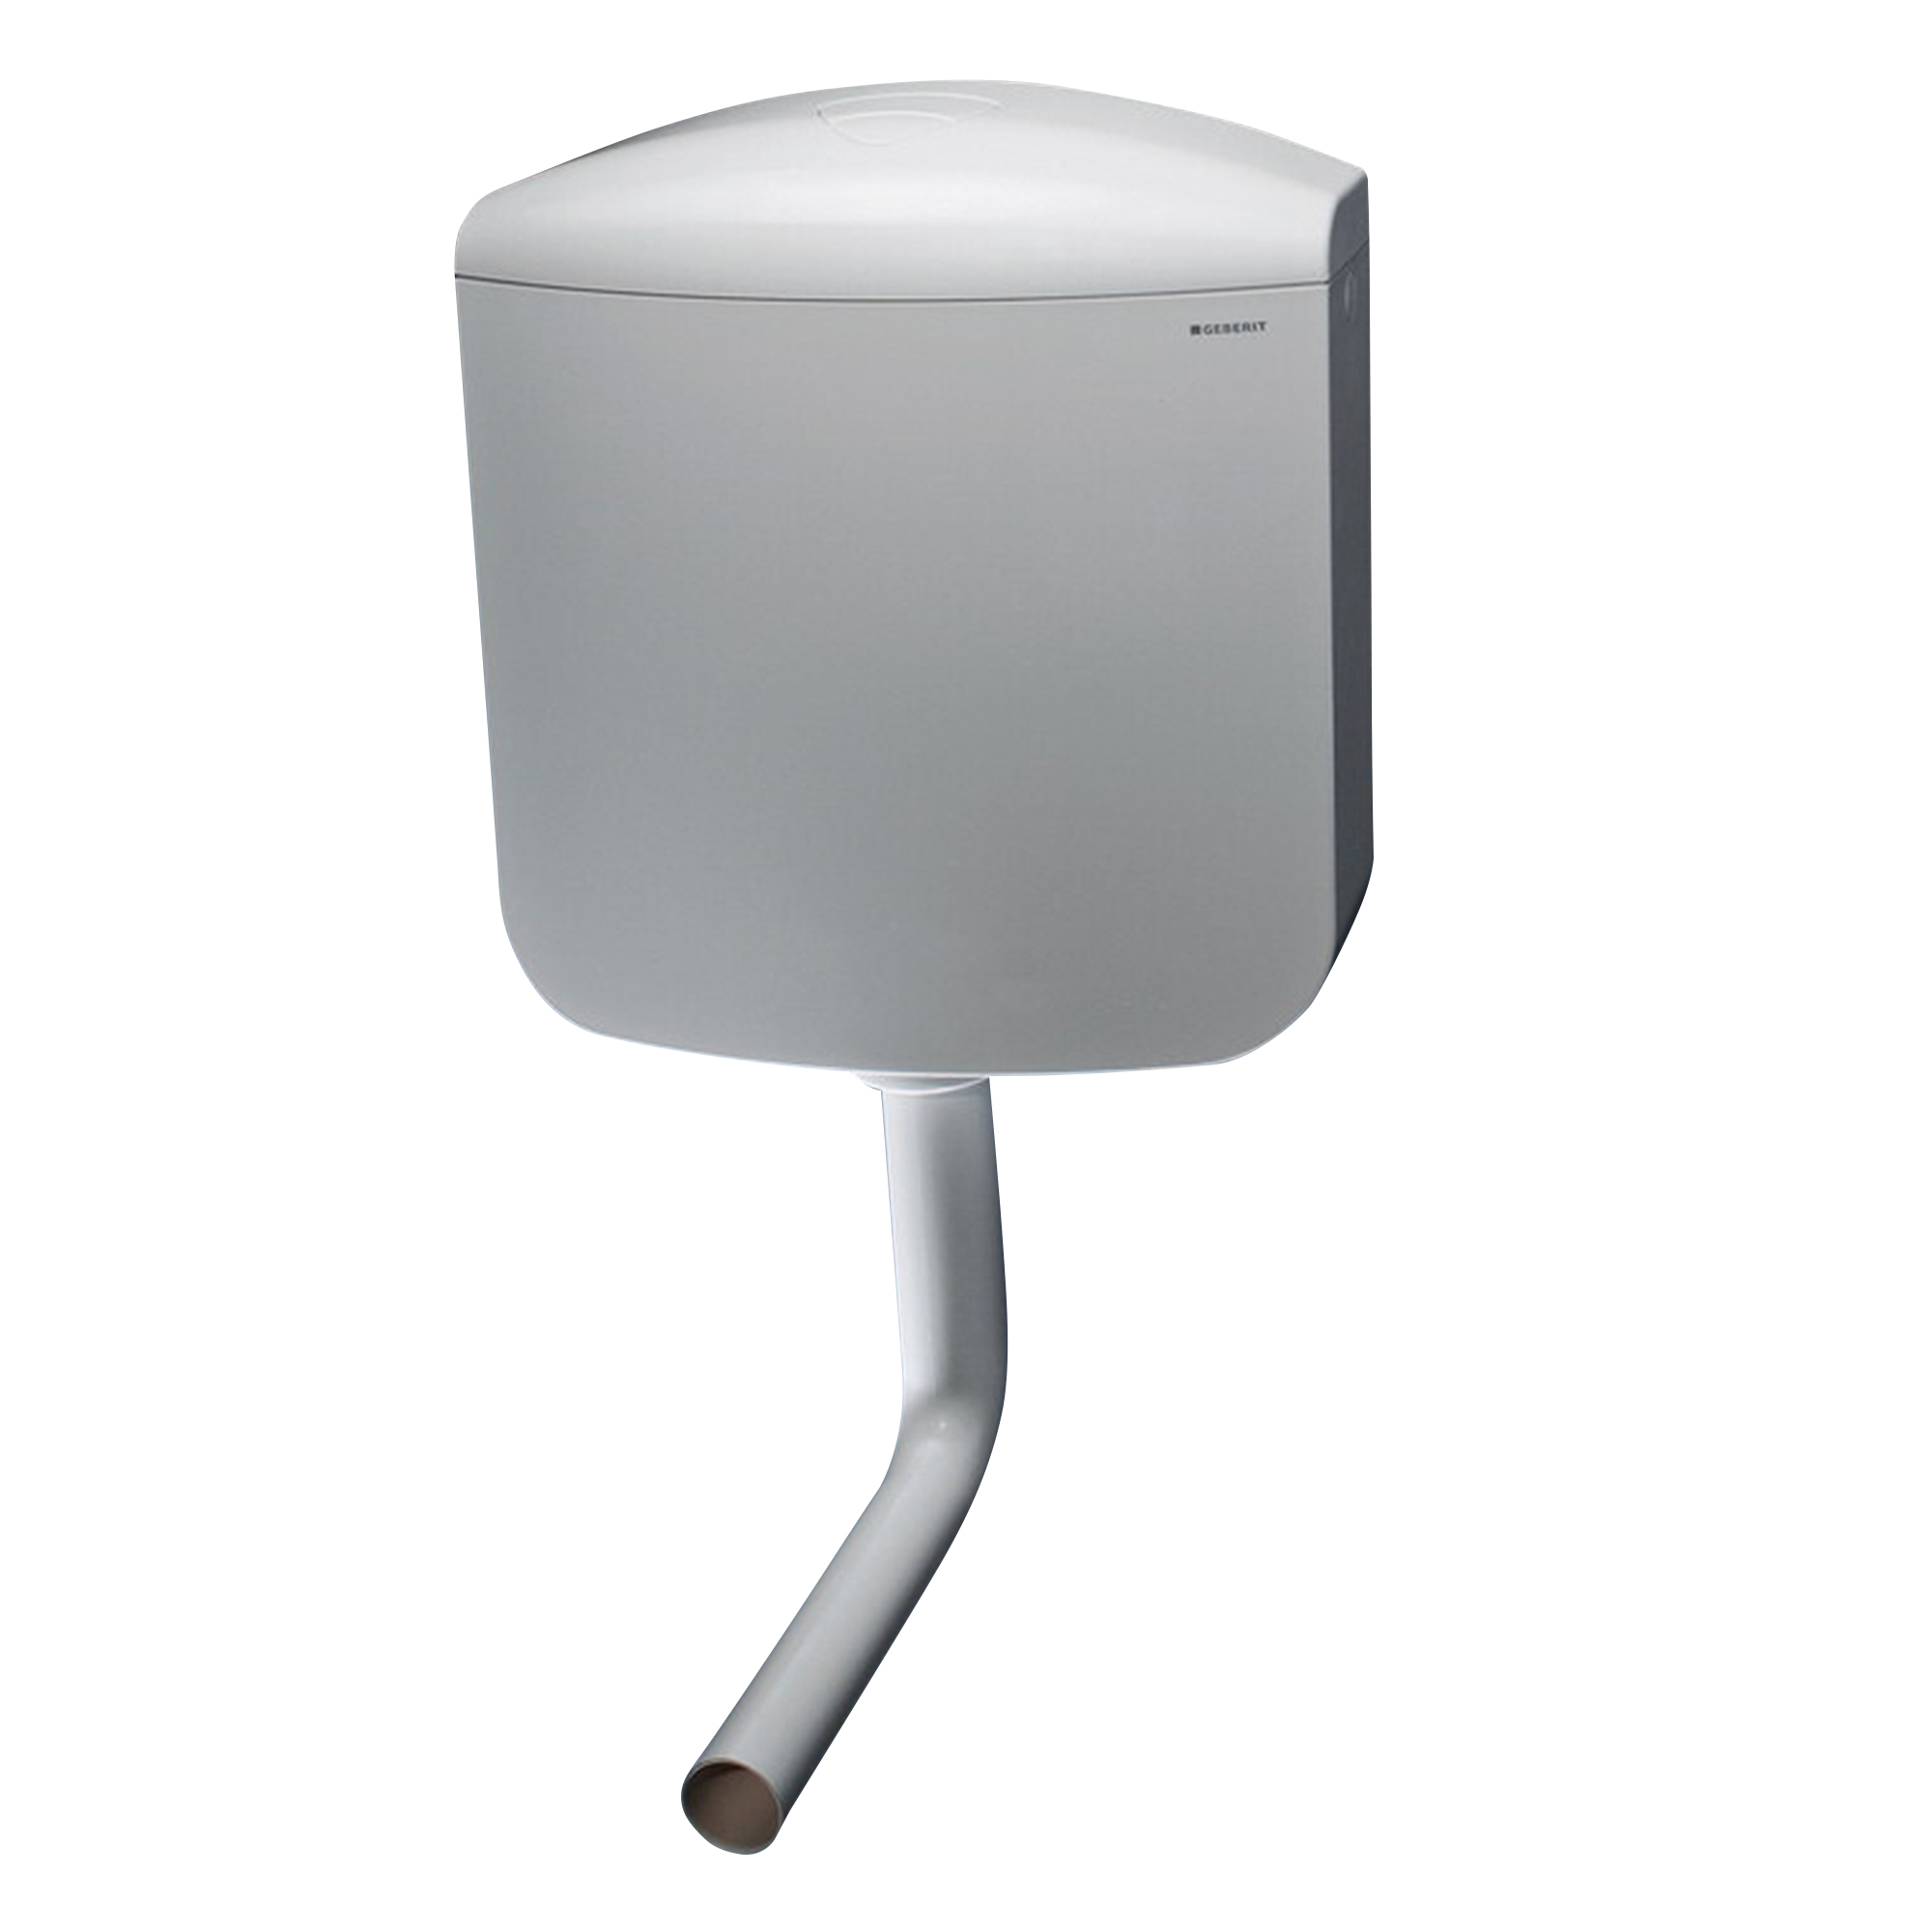 Cassetta WC esterna Geberit bianco AP117 con doppio pulsante 